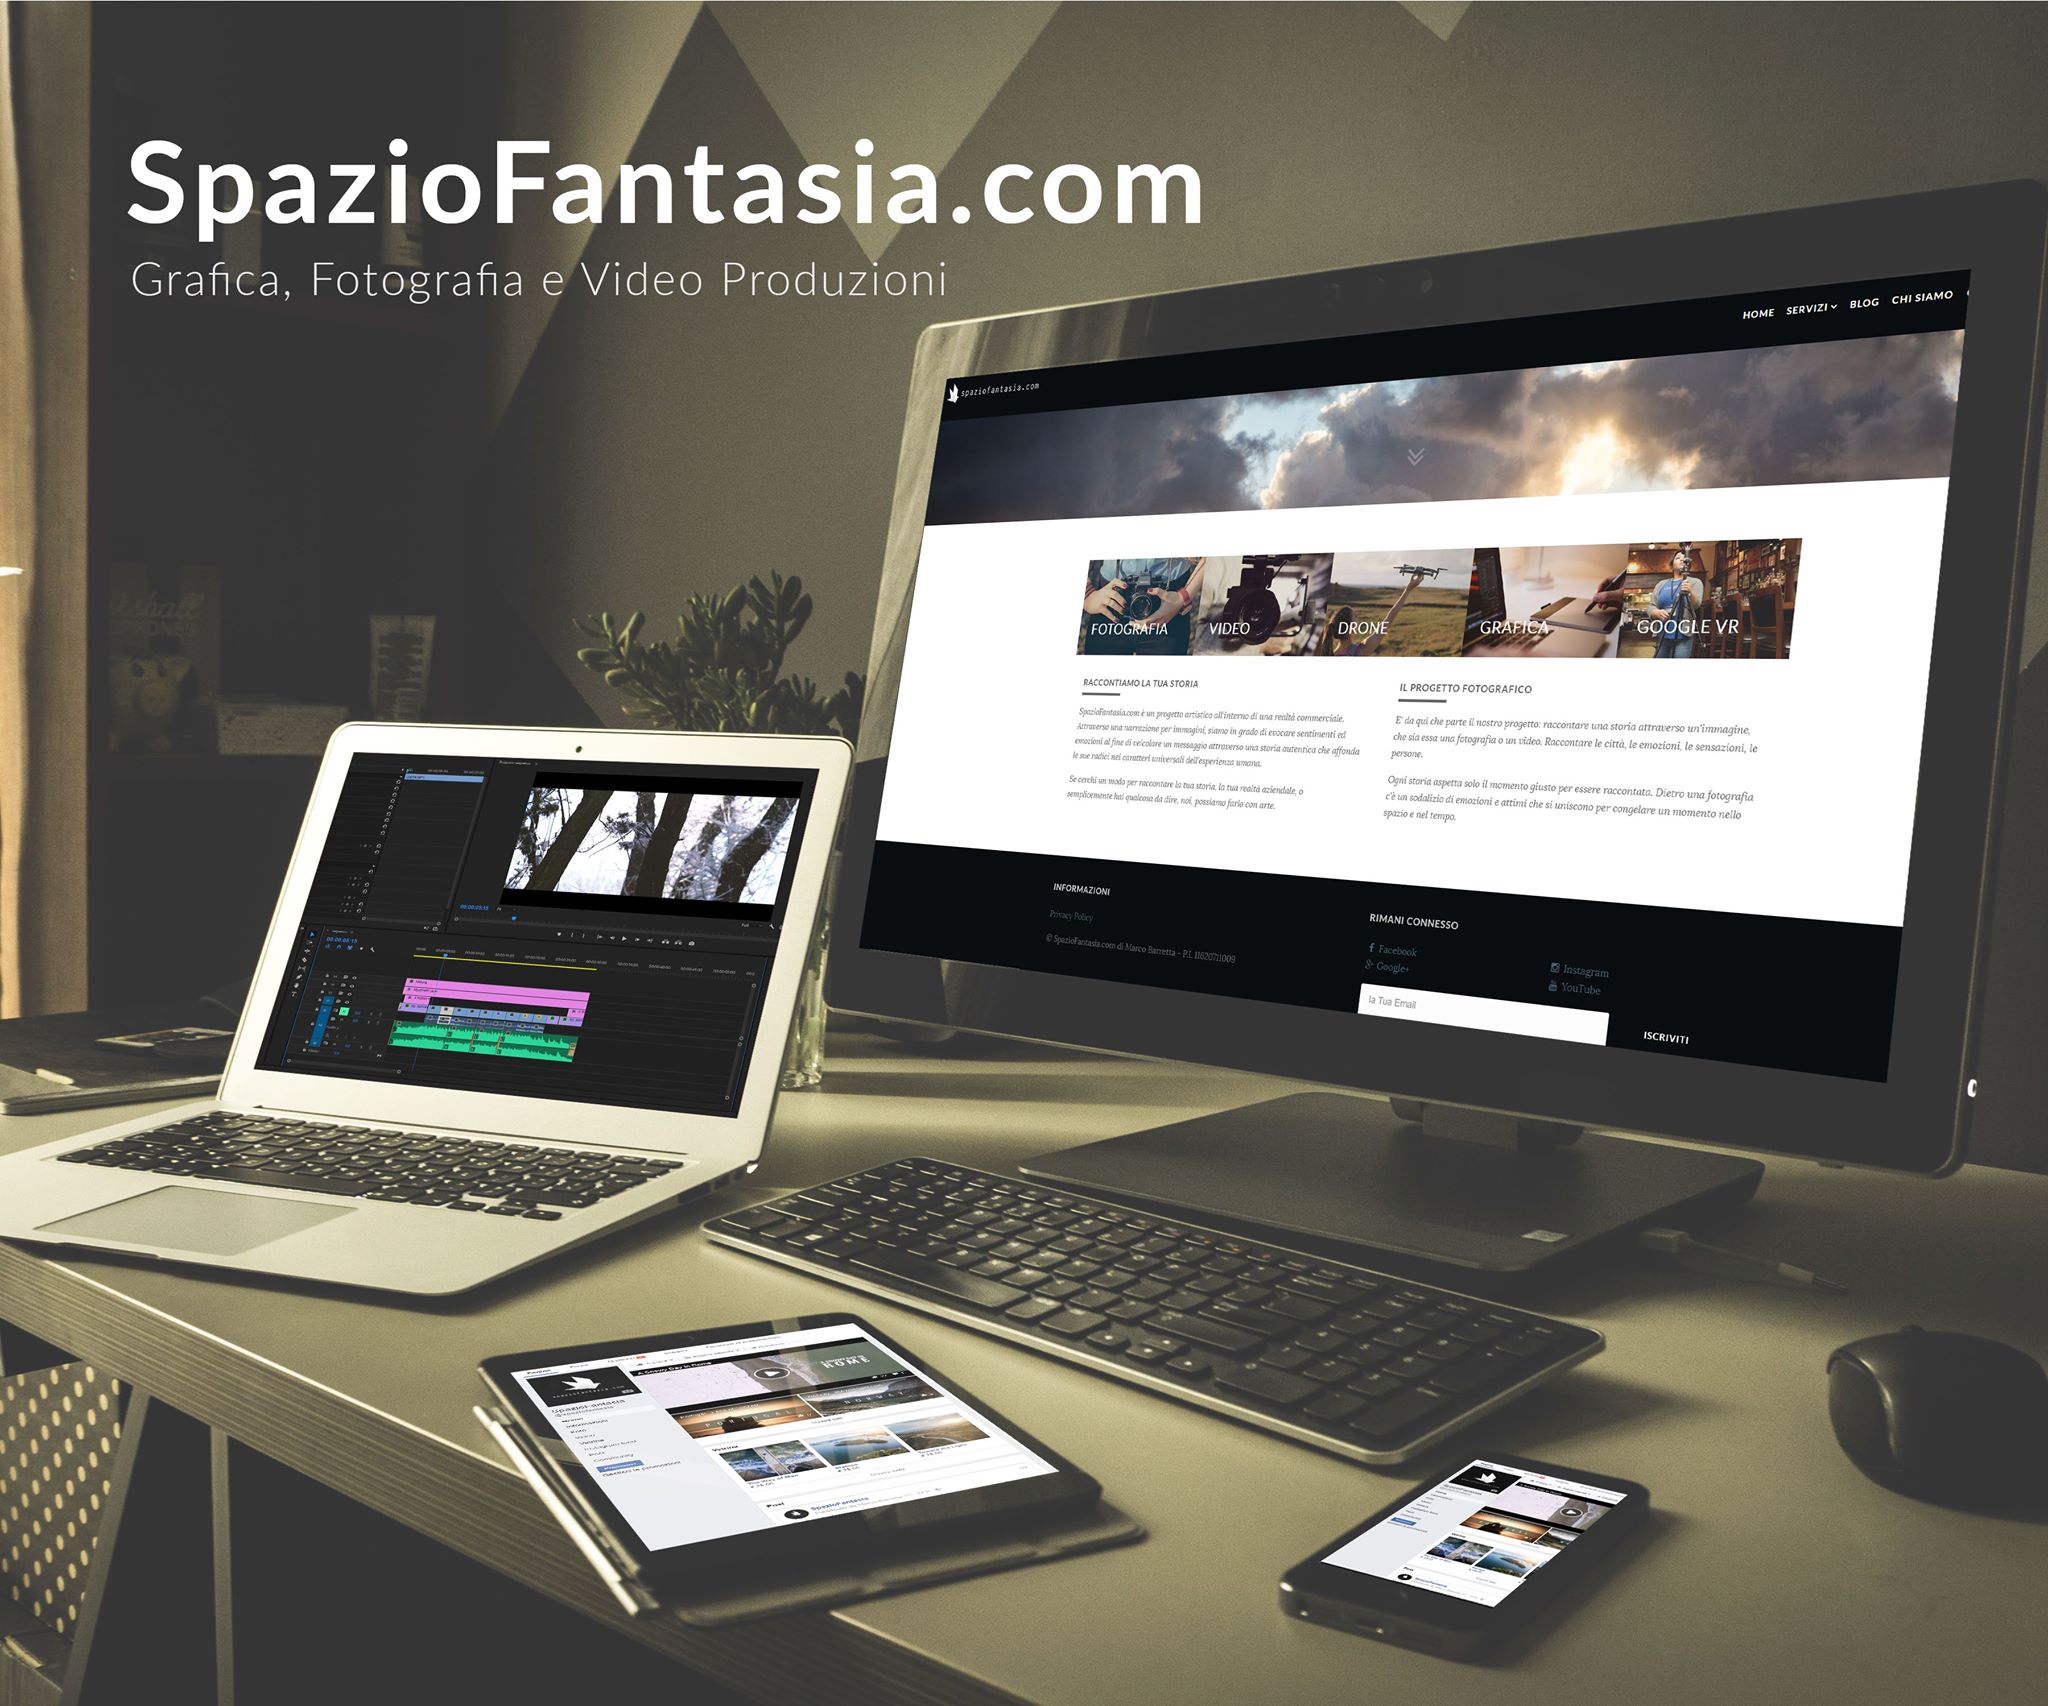 SpazioFantasia.com